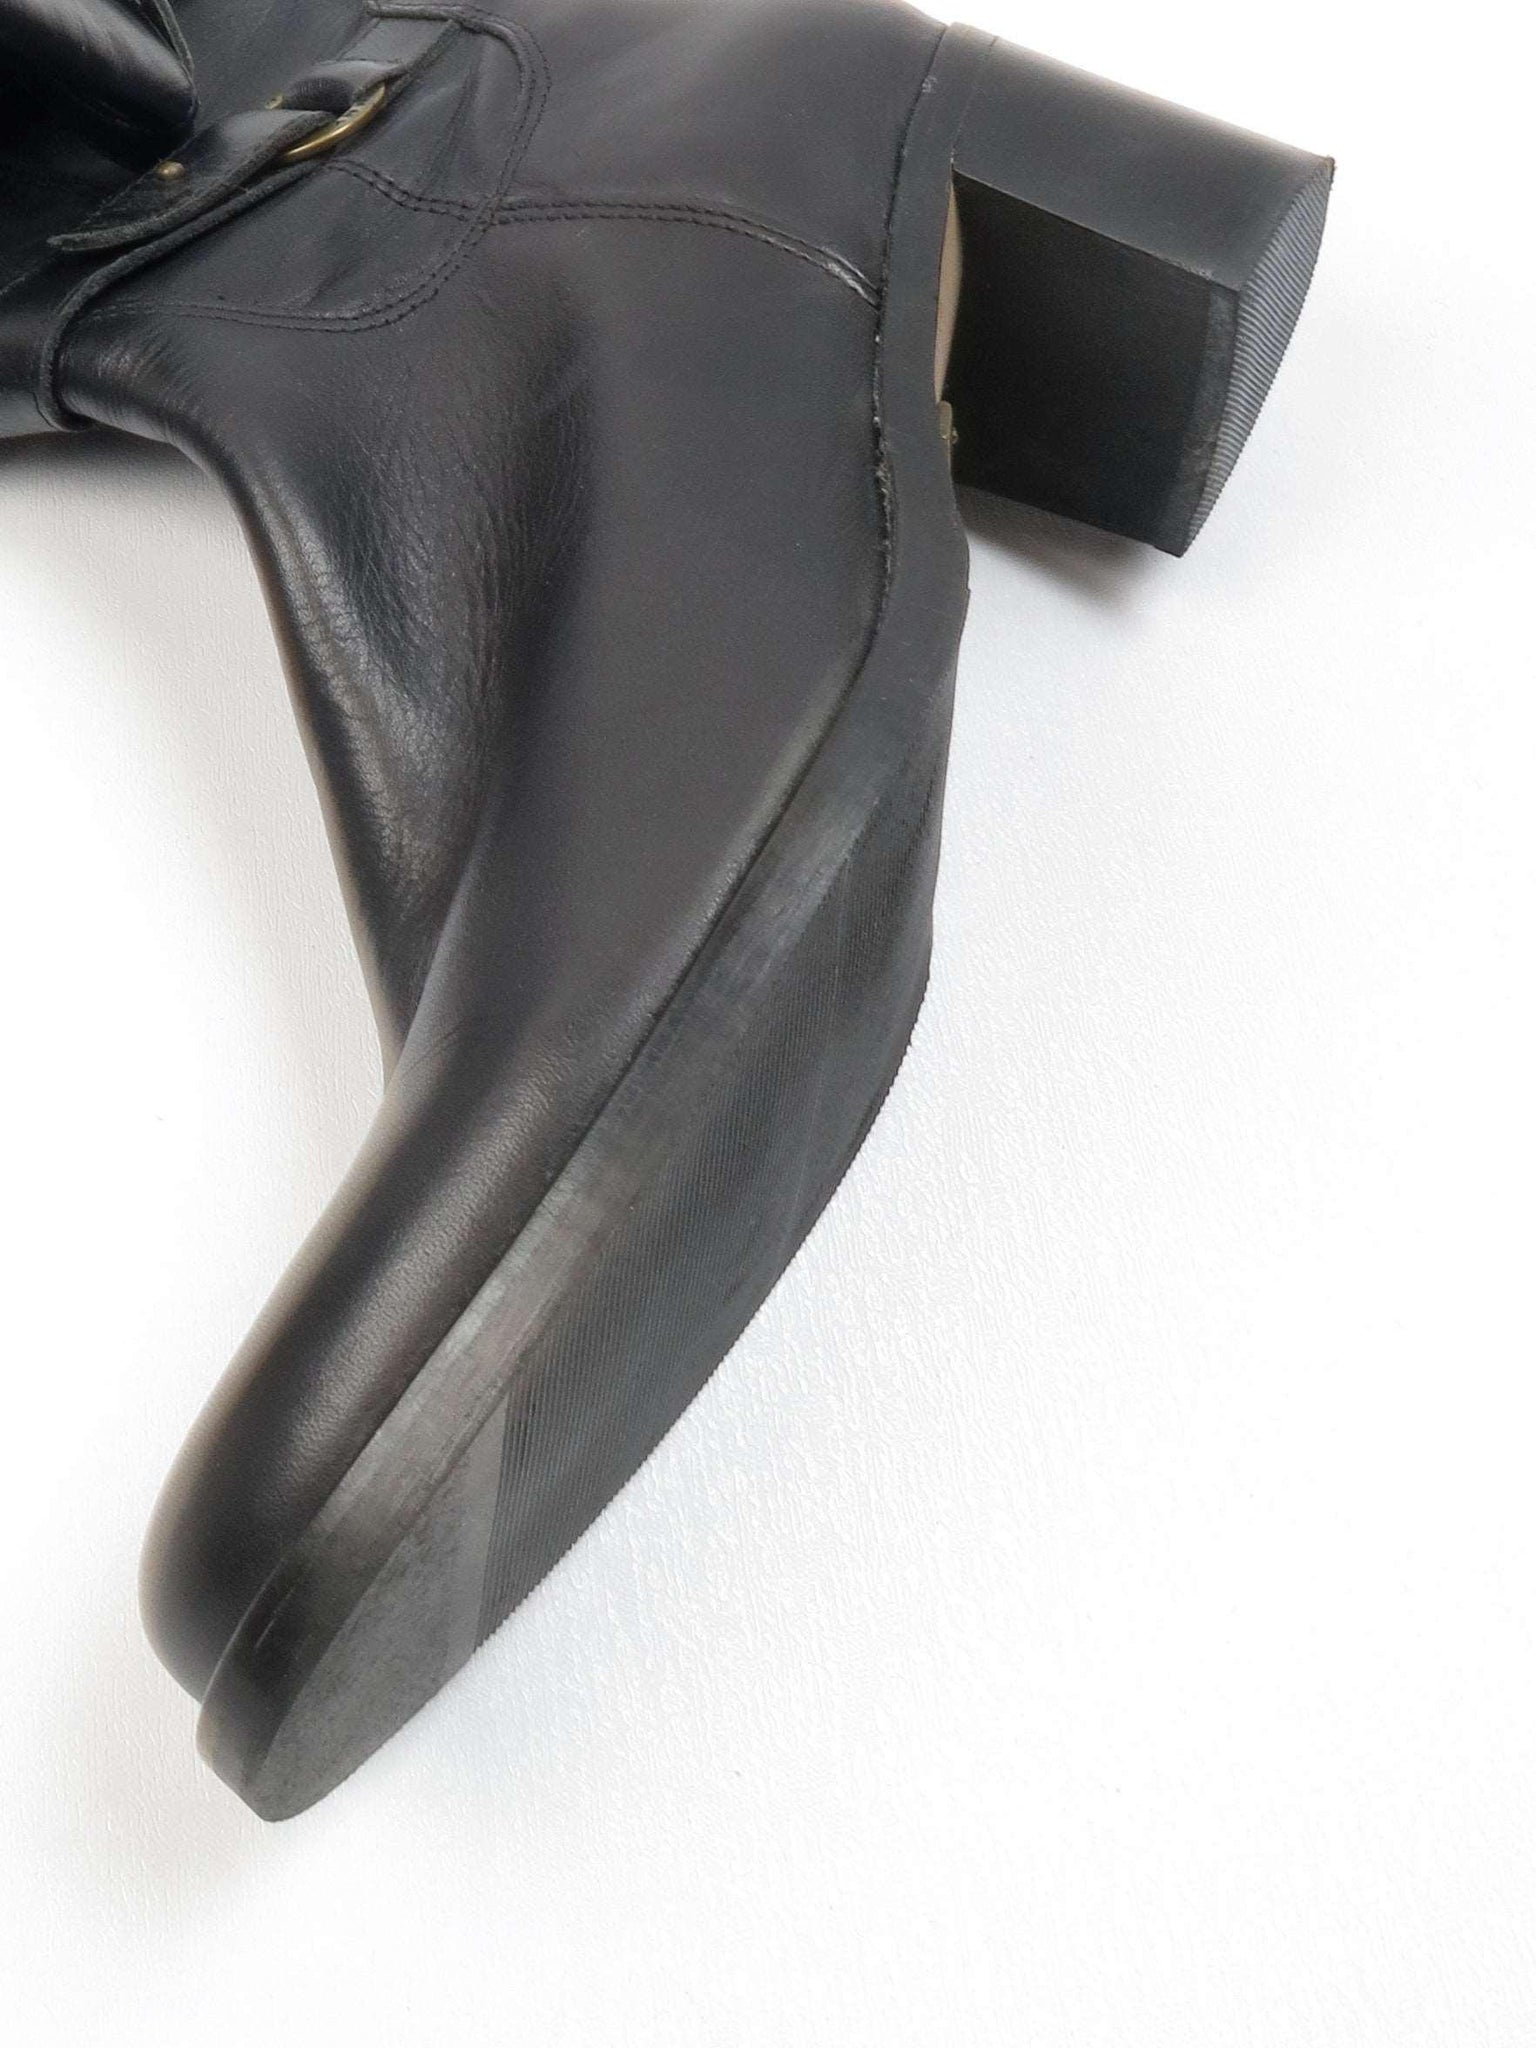 Black Leather Tommy Hilfiger Boots 7 UK 40 Eu - The Harlequin